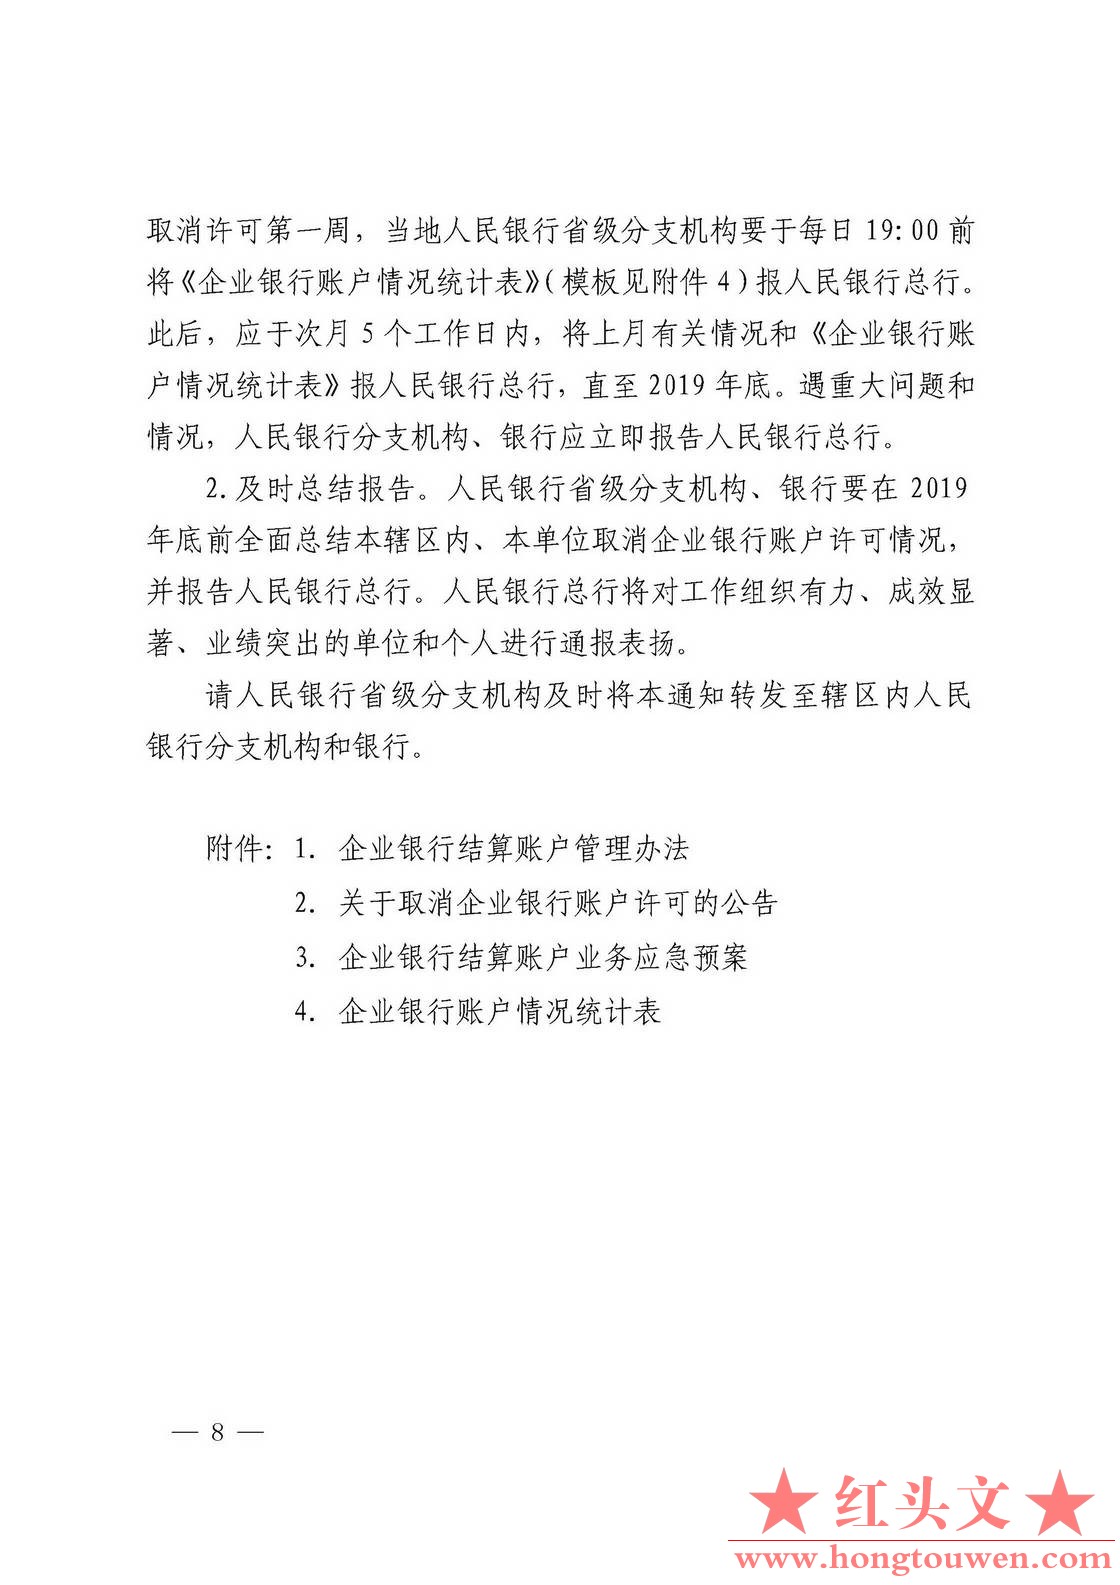 银发[2019]41号-中国人民银行关于取消企业银行账户许可的通知_页面_08.jpg.jpg